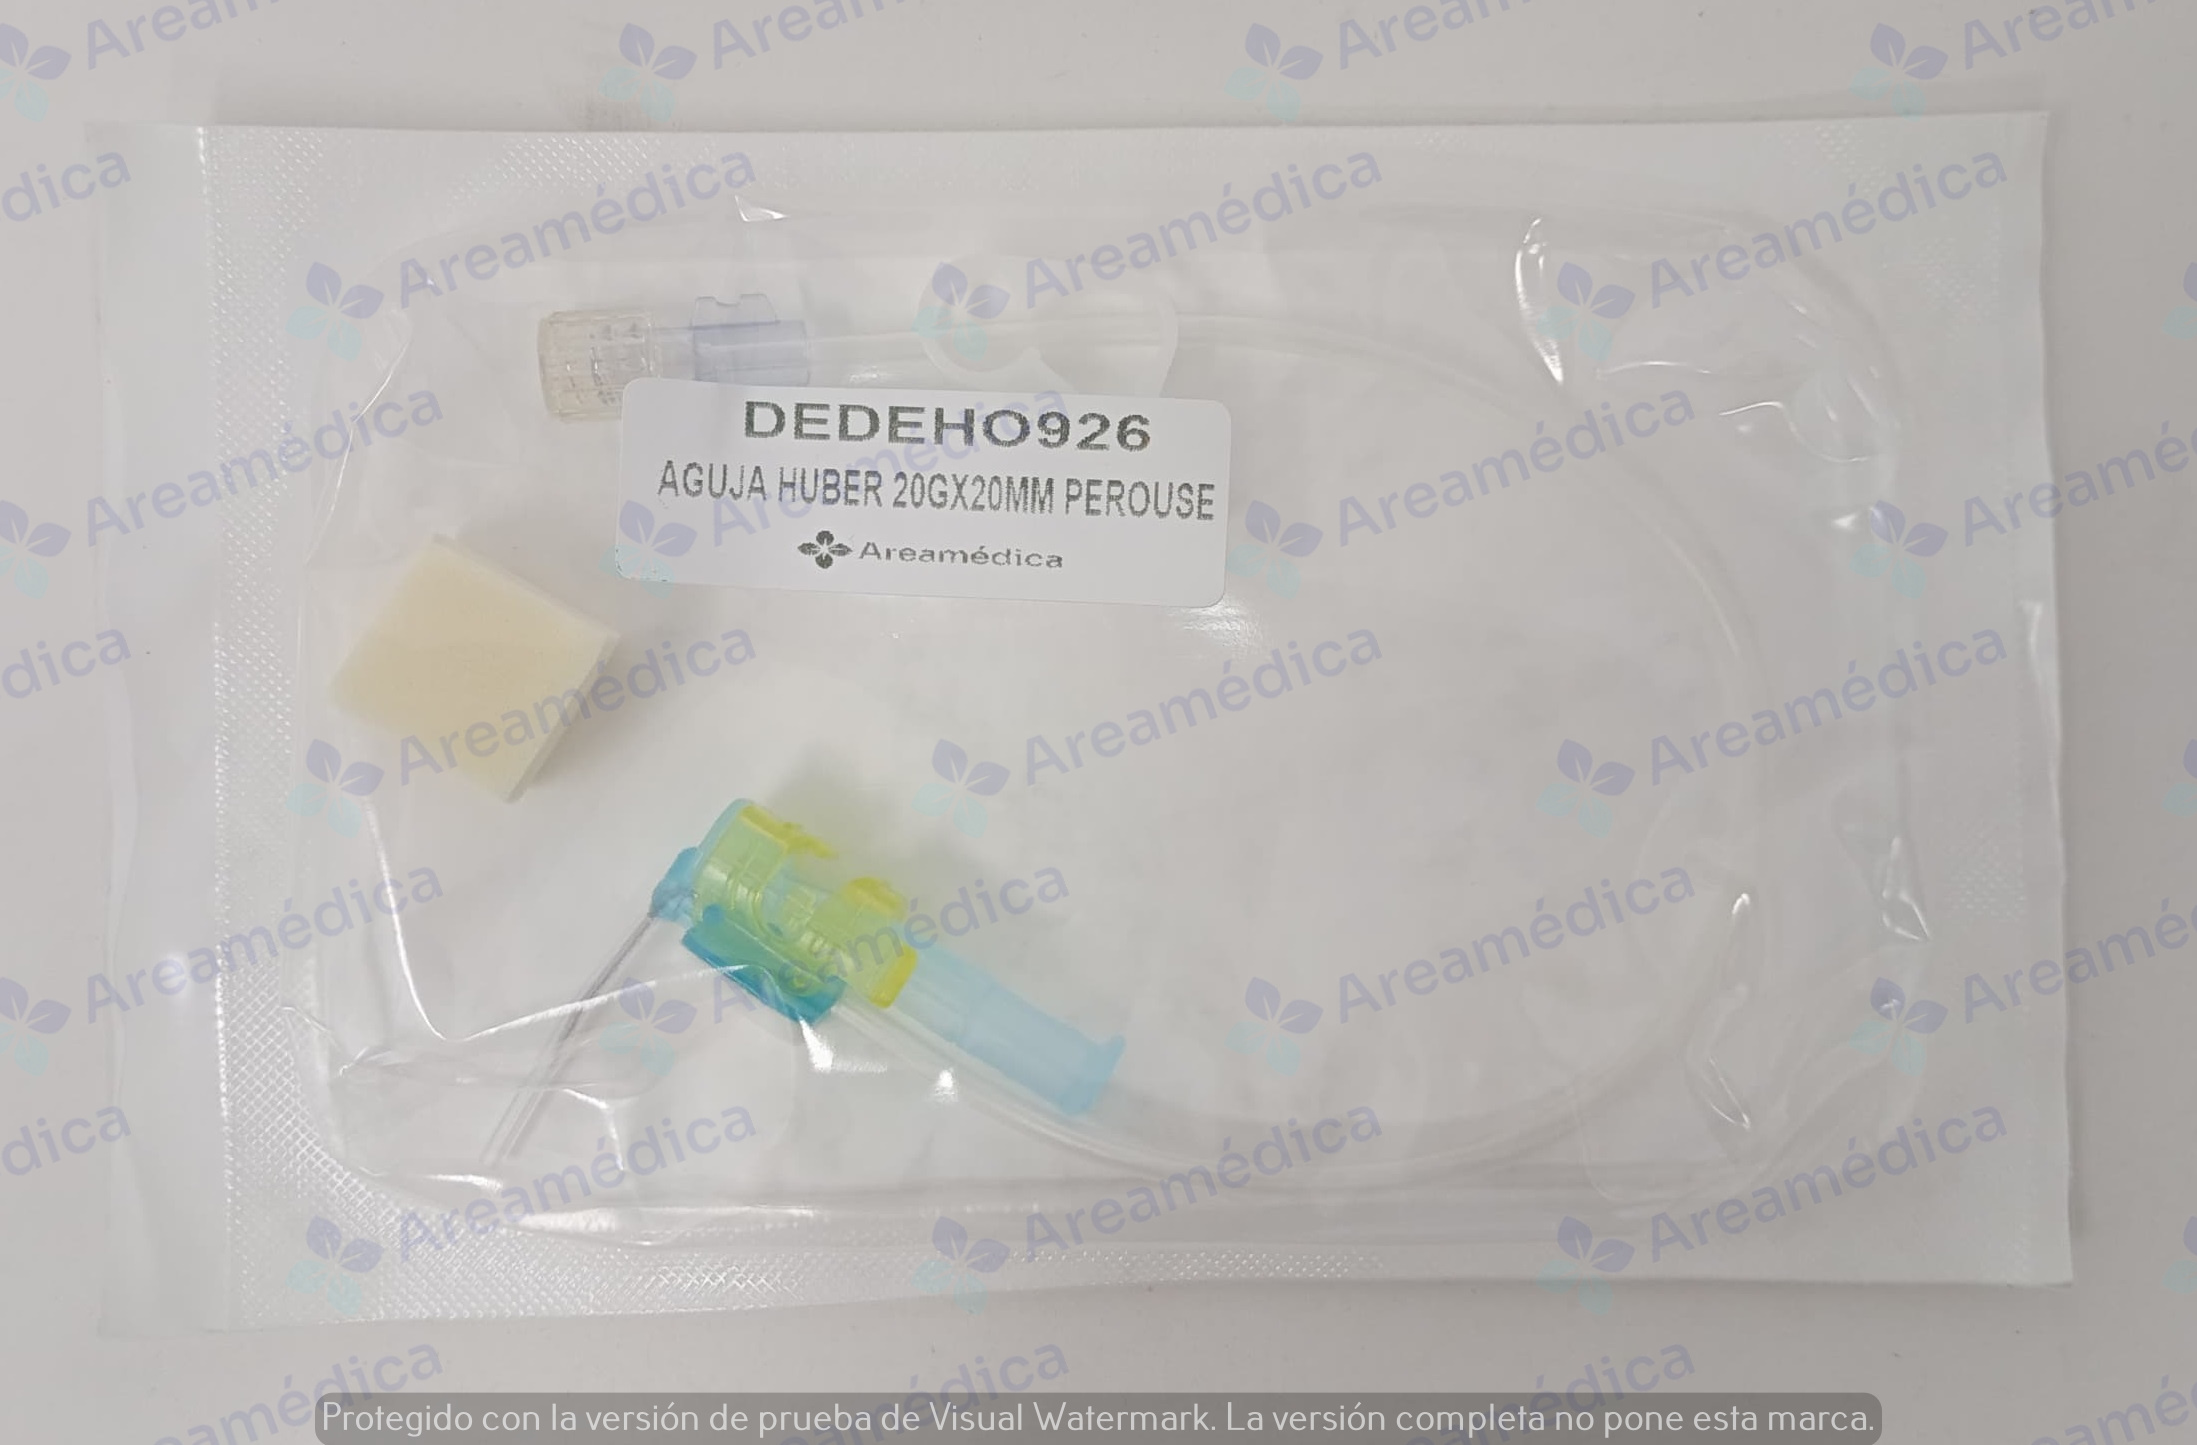 Aguja huber poliperf 20GX20MM con linea de conexion PVC para quimioterapia